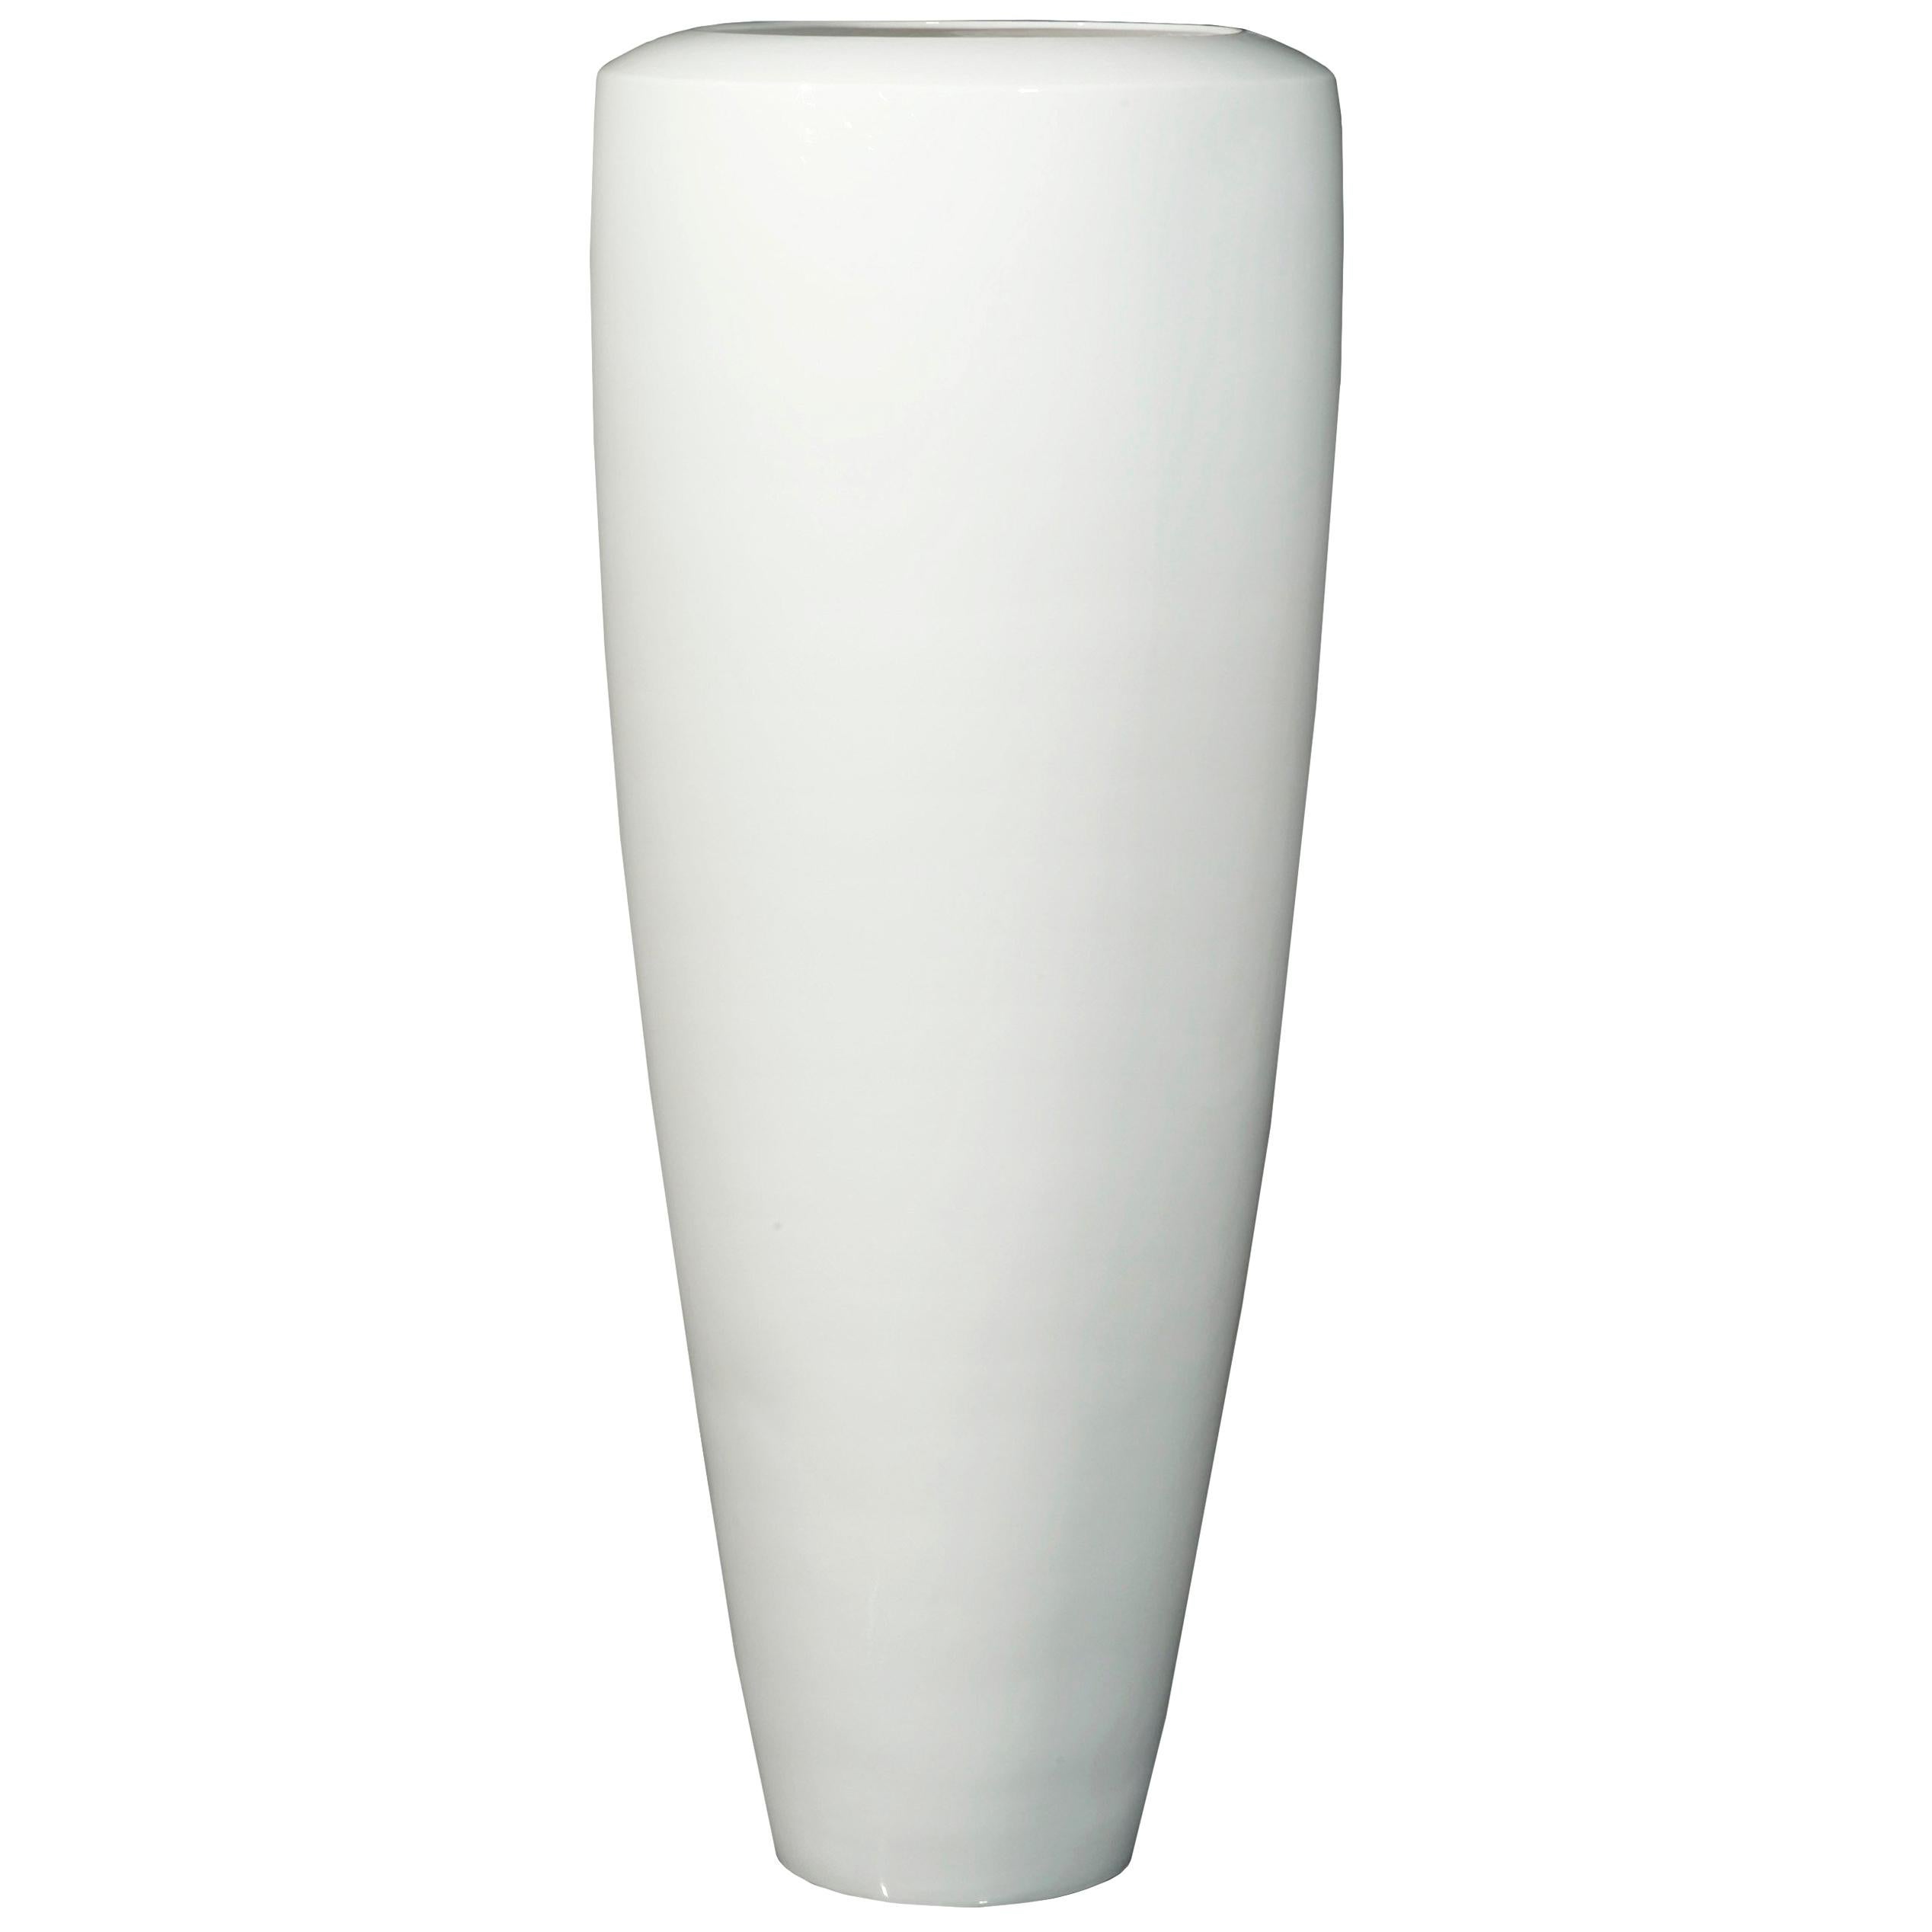 Vase Obice Small in Ceramic, Shiny White, Italy